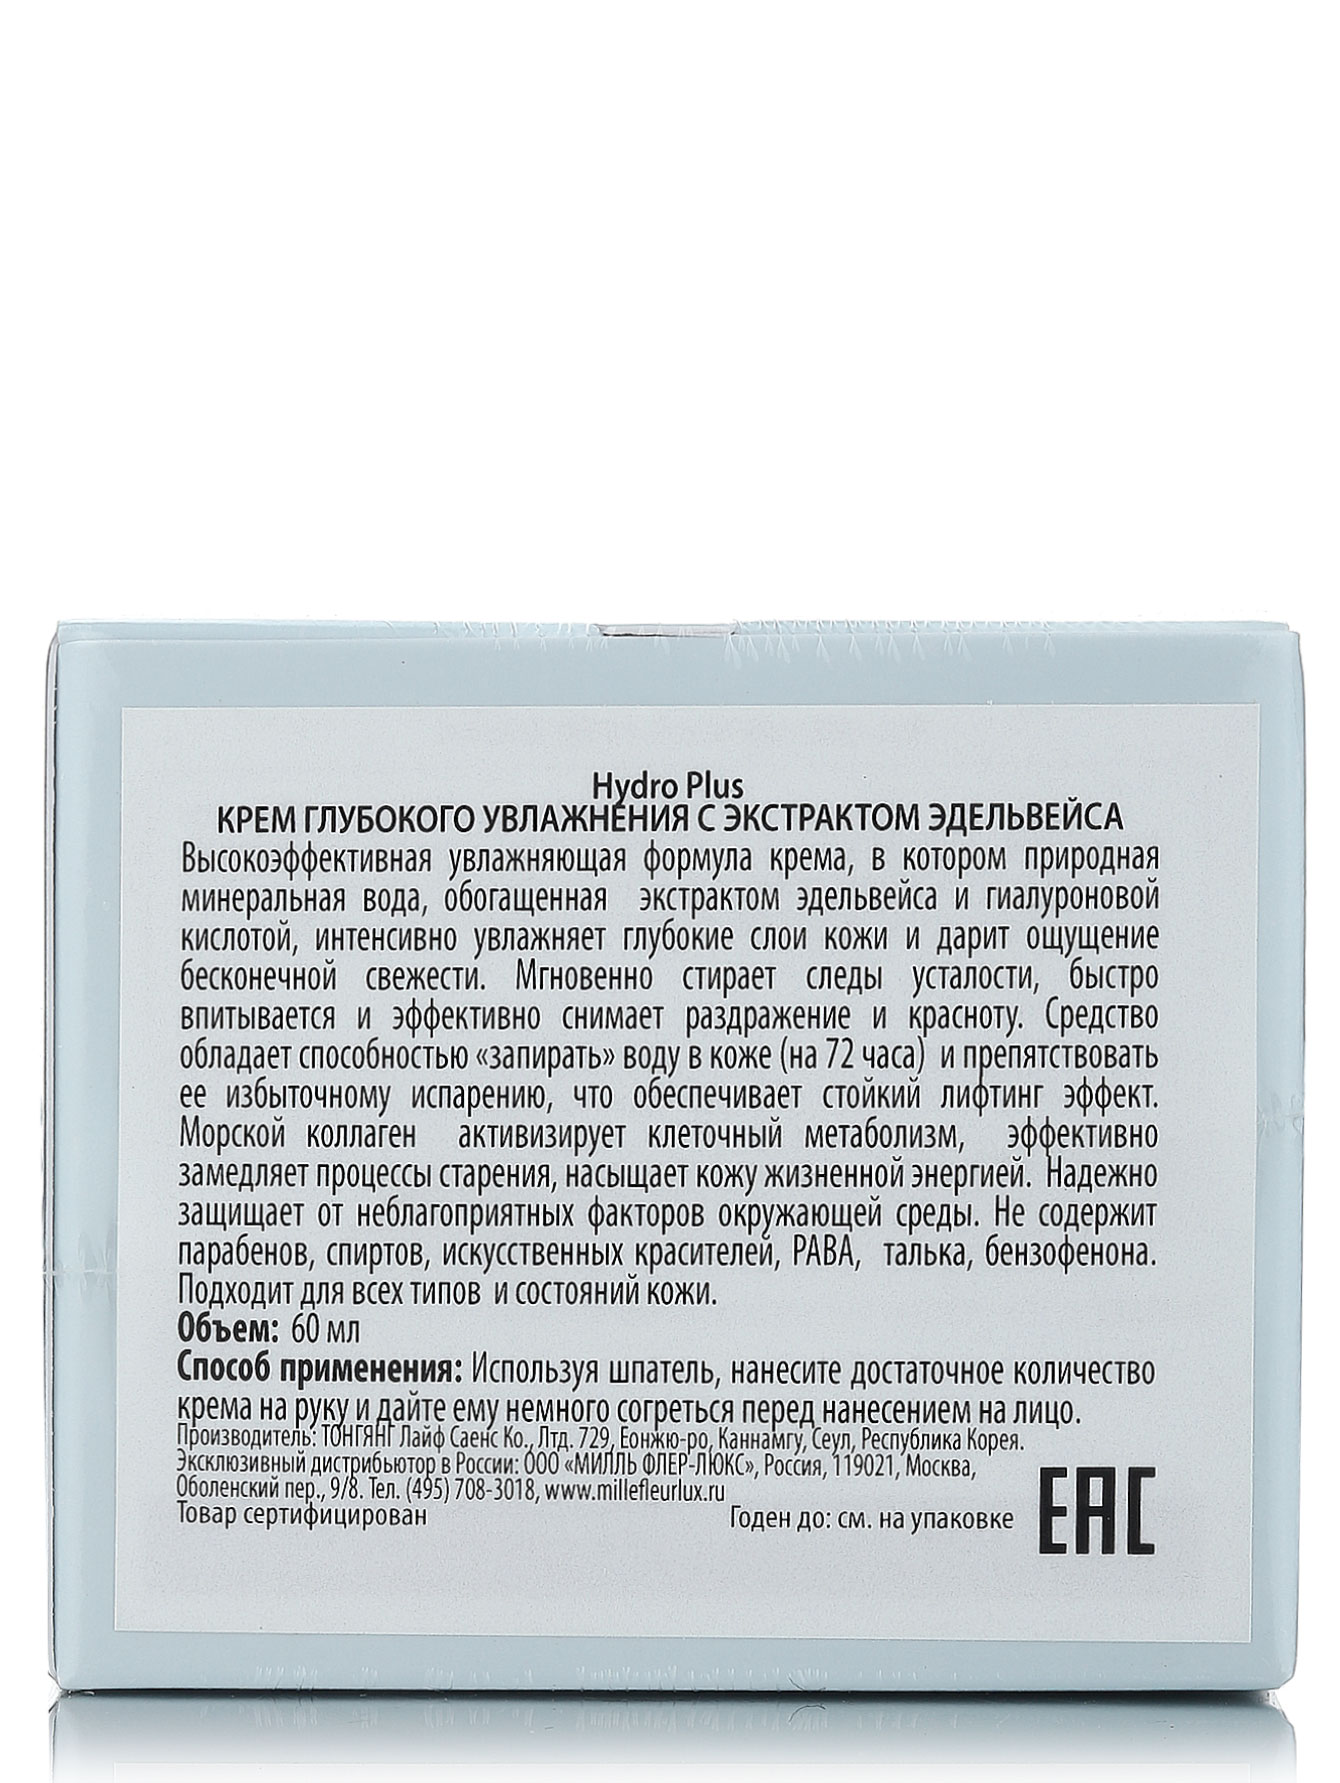  Крем глубокого увлажнения с экстрактом эдельвейса - Skin Care, 60ml - Модель Верх-Низ